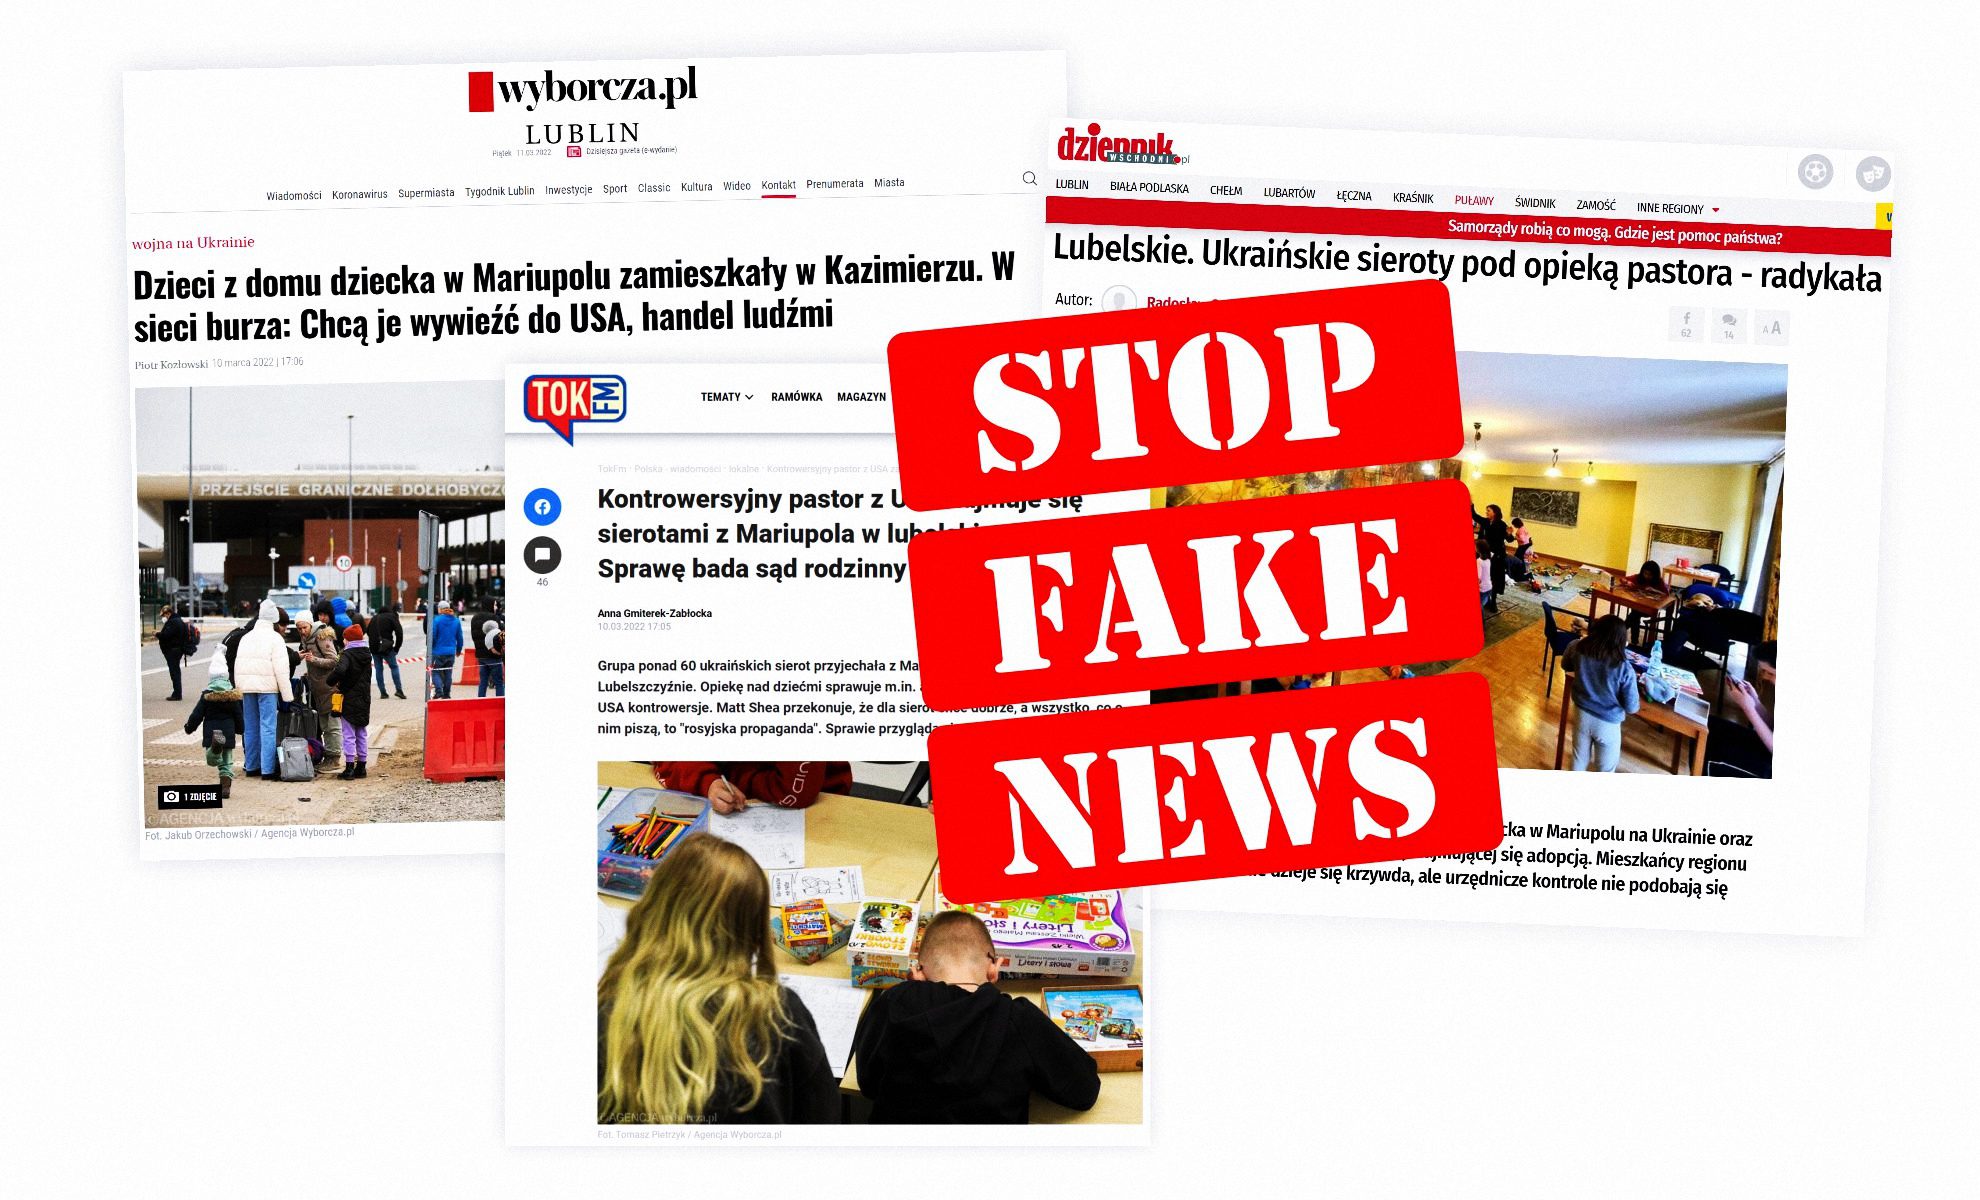 Fake newsy ruskiej narracji ws. sierot z Mariupola